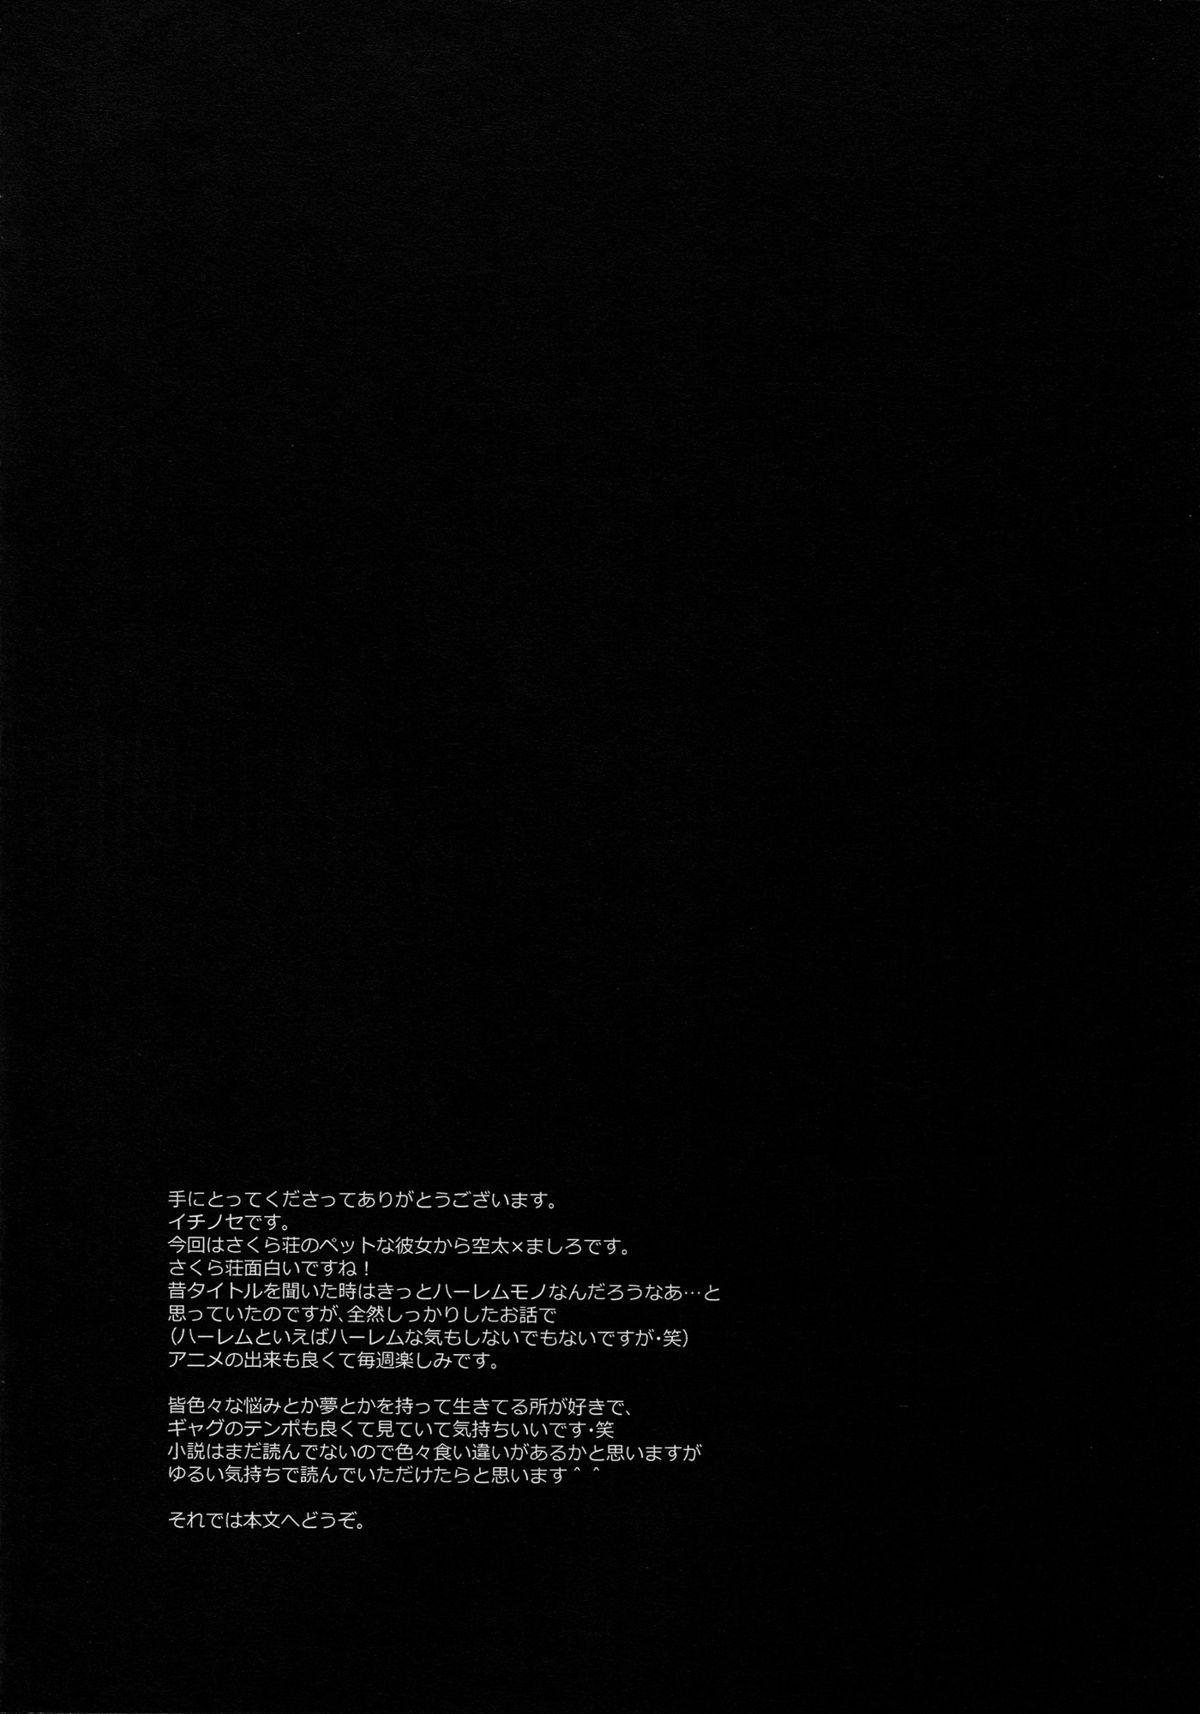 Milfporn A. Sore wa Koi to Iu Na no. - Sakurasou no pet na kanojo Novinho - Page 4